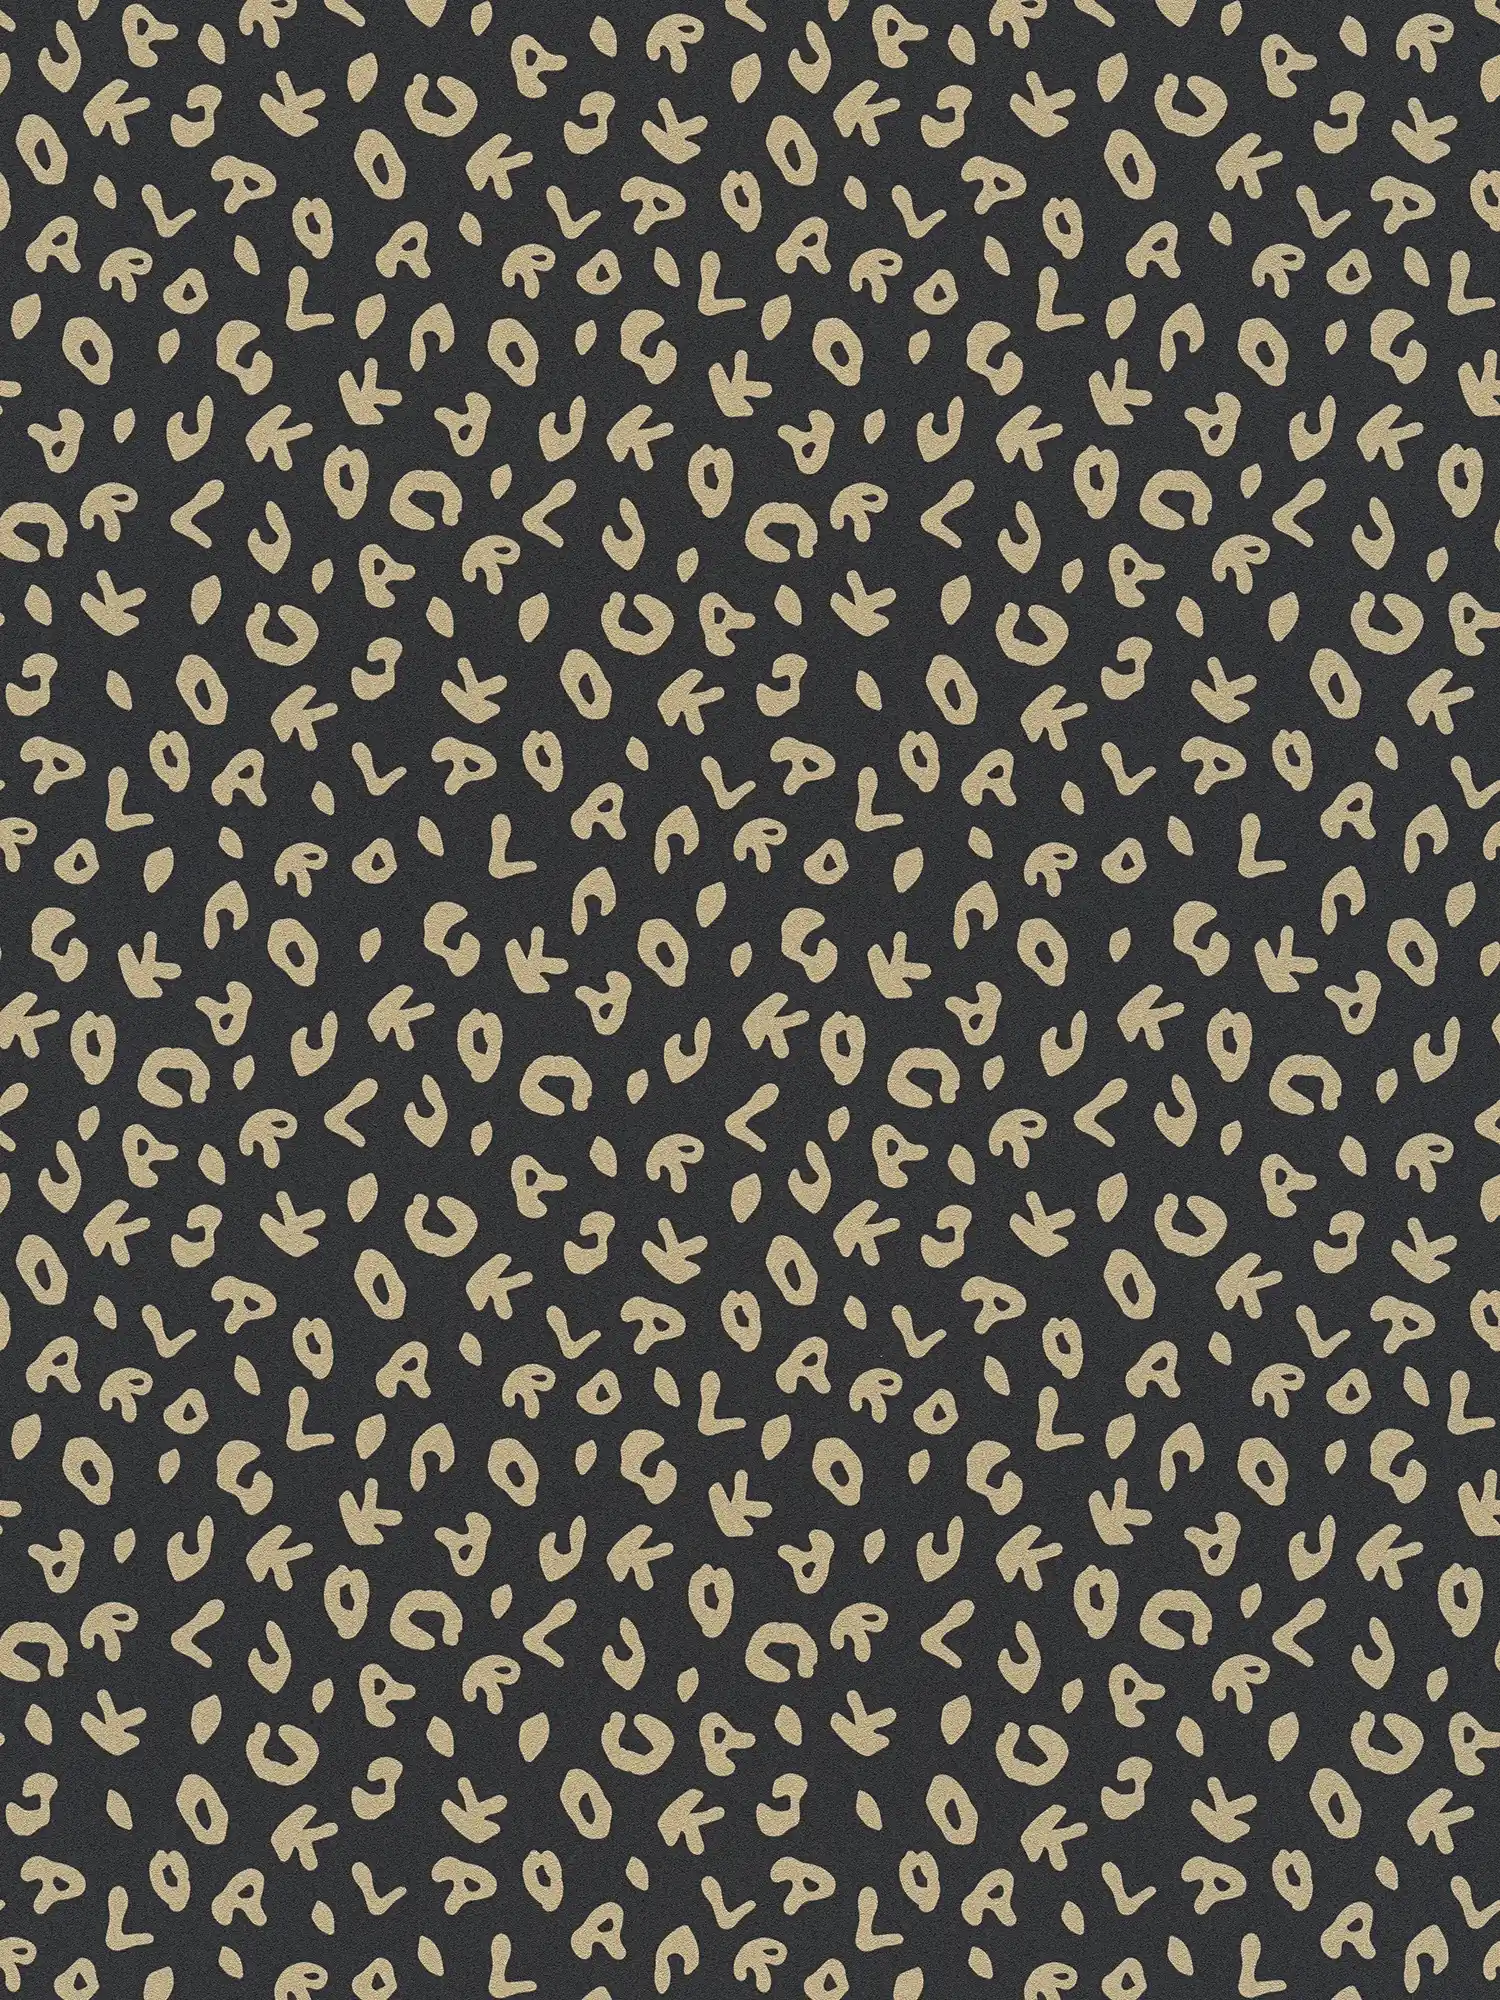 Karl LAGERFELD behang goud luipaard print - metallic, zwart
